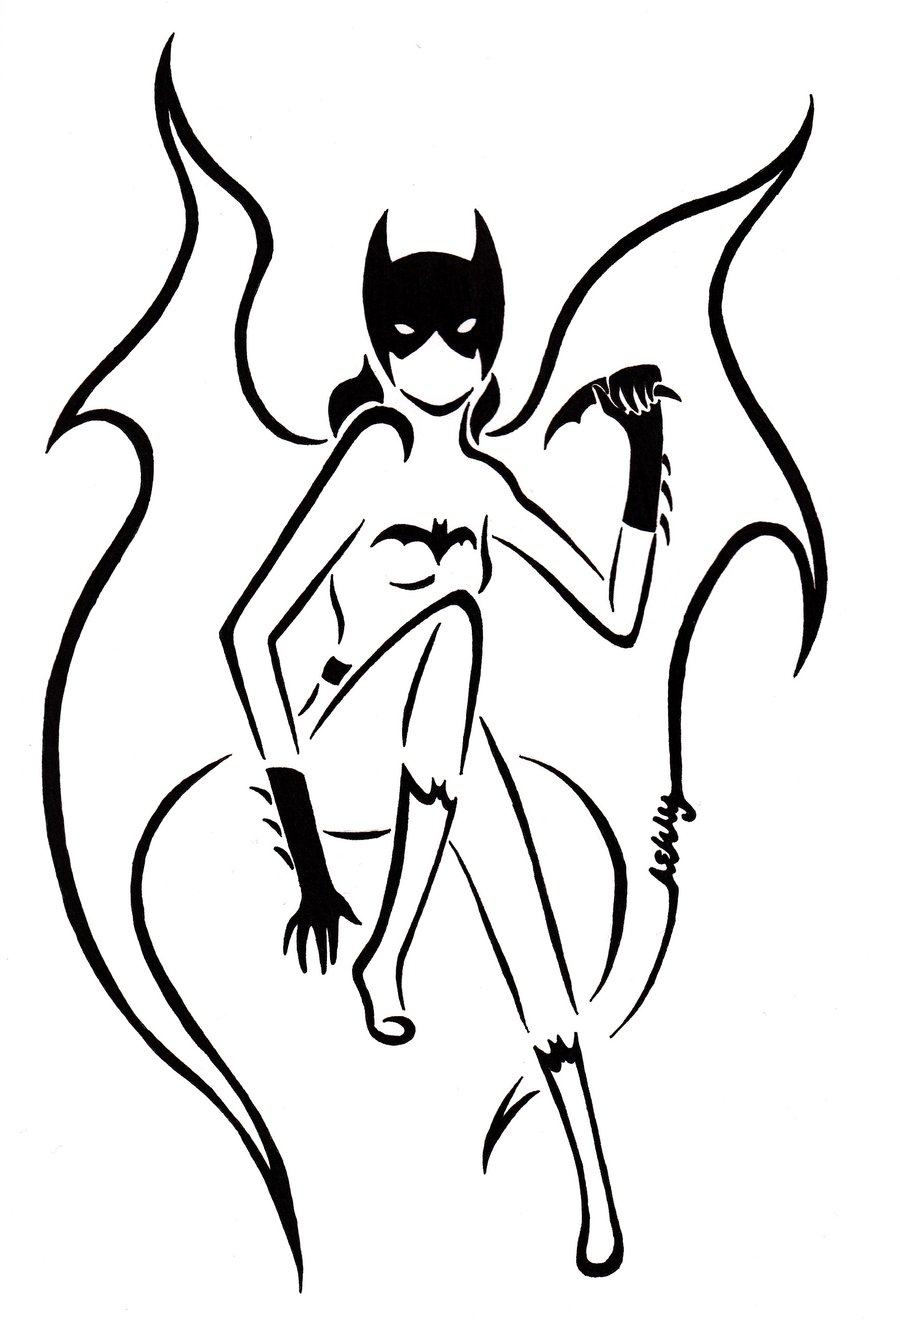 deviantART: More Like Batgirl tribal tatt. by Zanture-